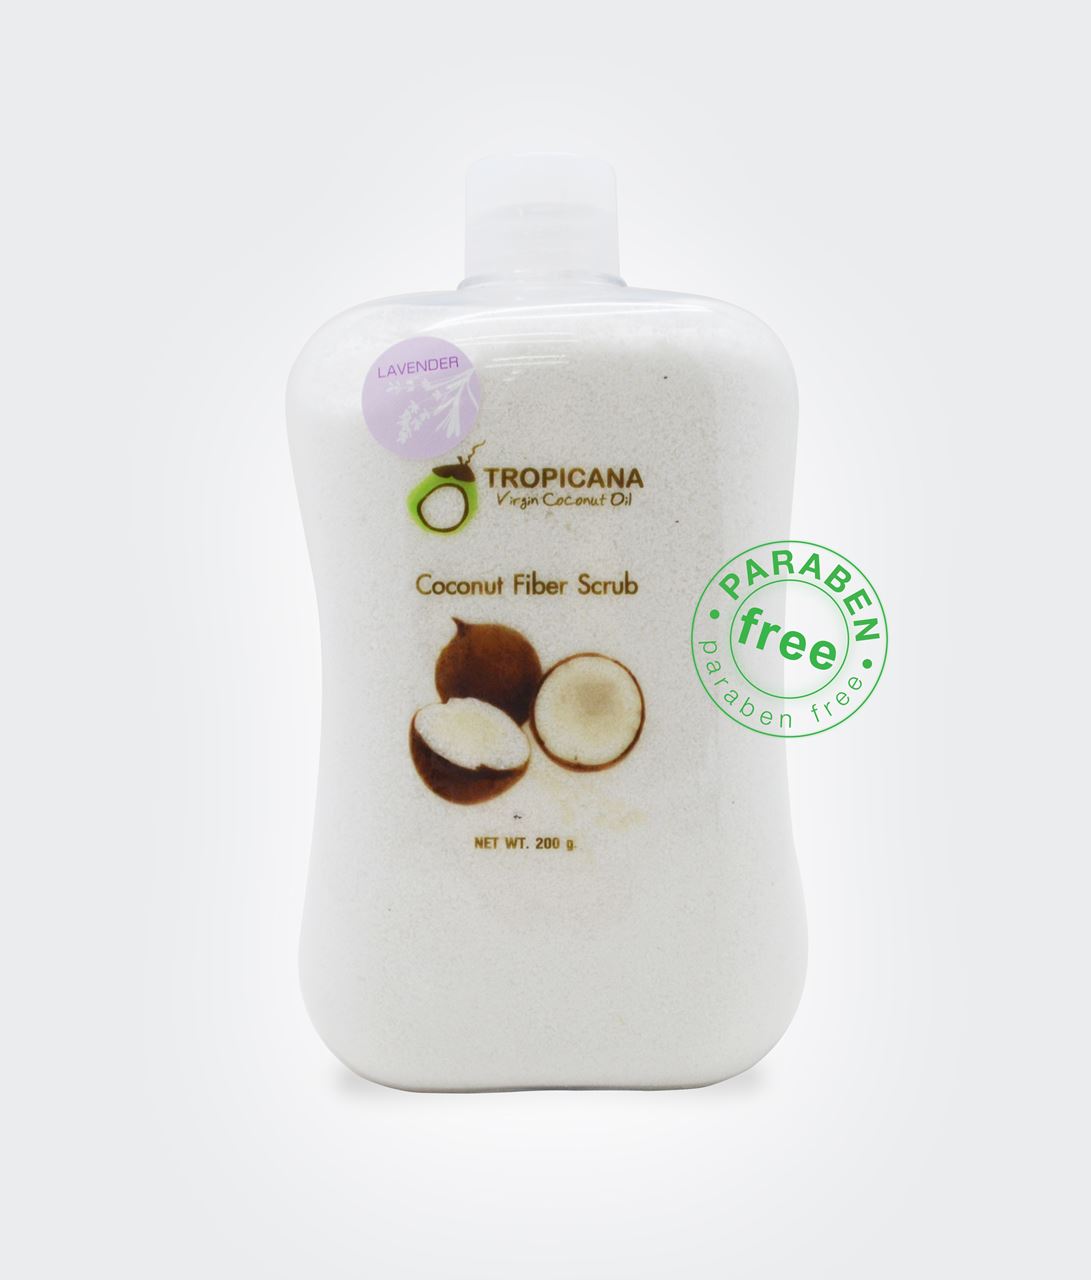 Натуральный сухой кокосовый скраб для тела из Тайланда Coconut fiber scrub Tropicana oil купить в Москве и Московской области.